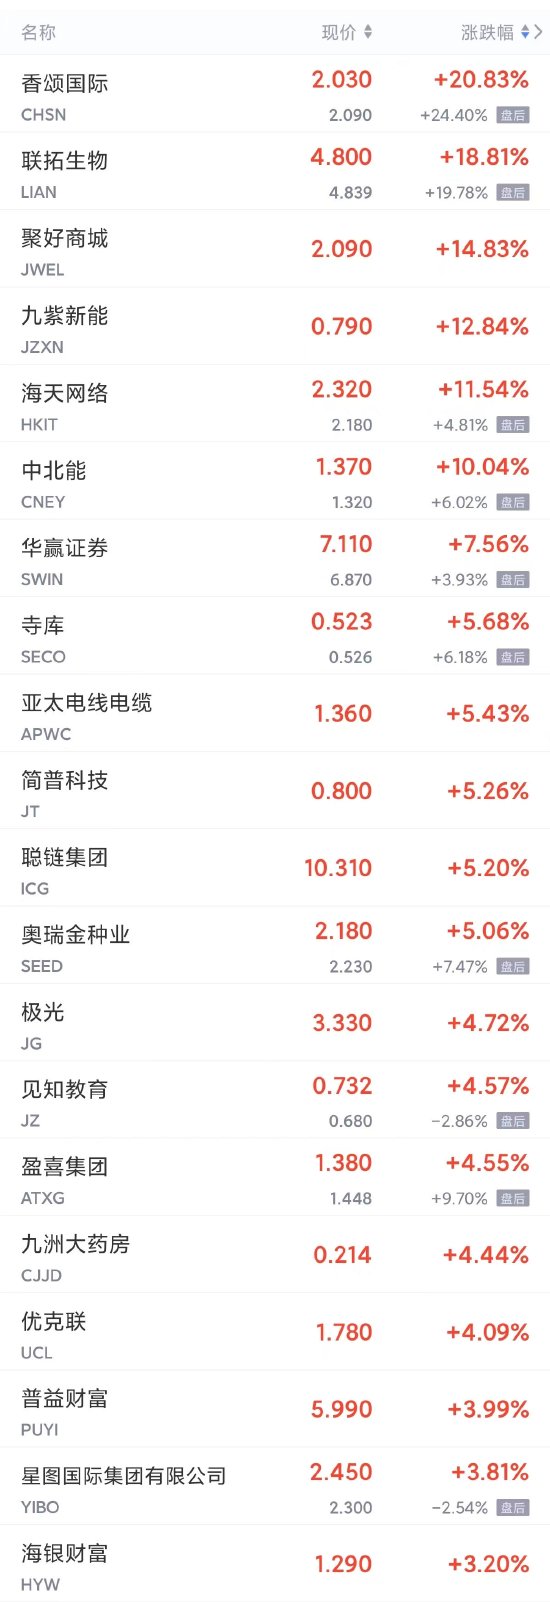 周二热门中概股多数下跌 爱奇艺、蔚来跌超6%，B站跌超5%，小鹏、京东、网易跌超3%